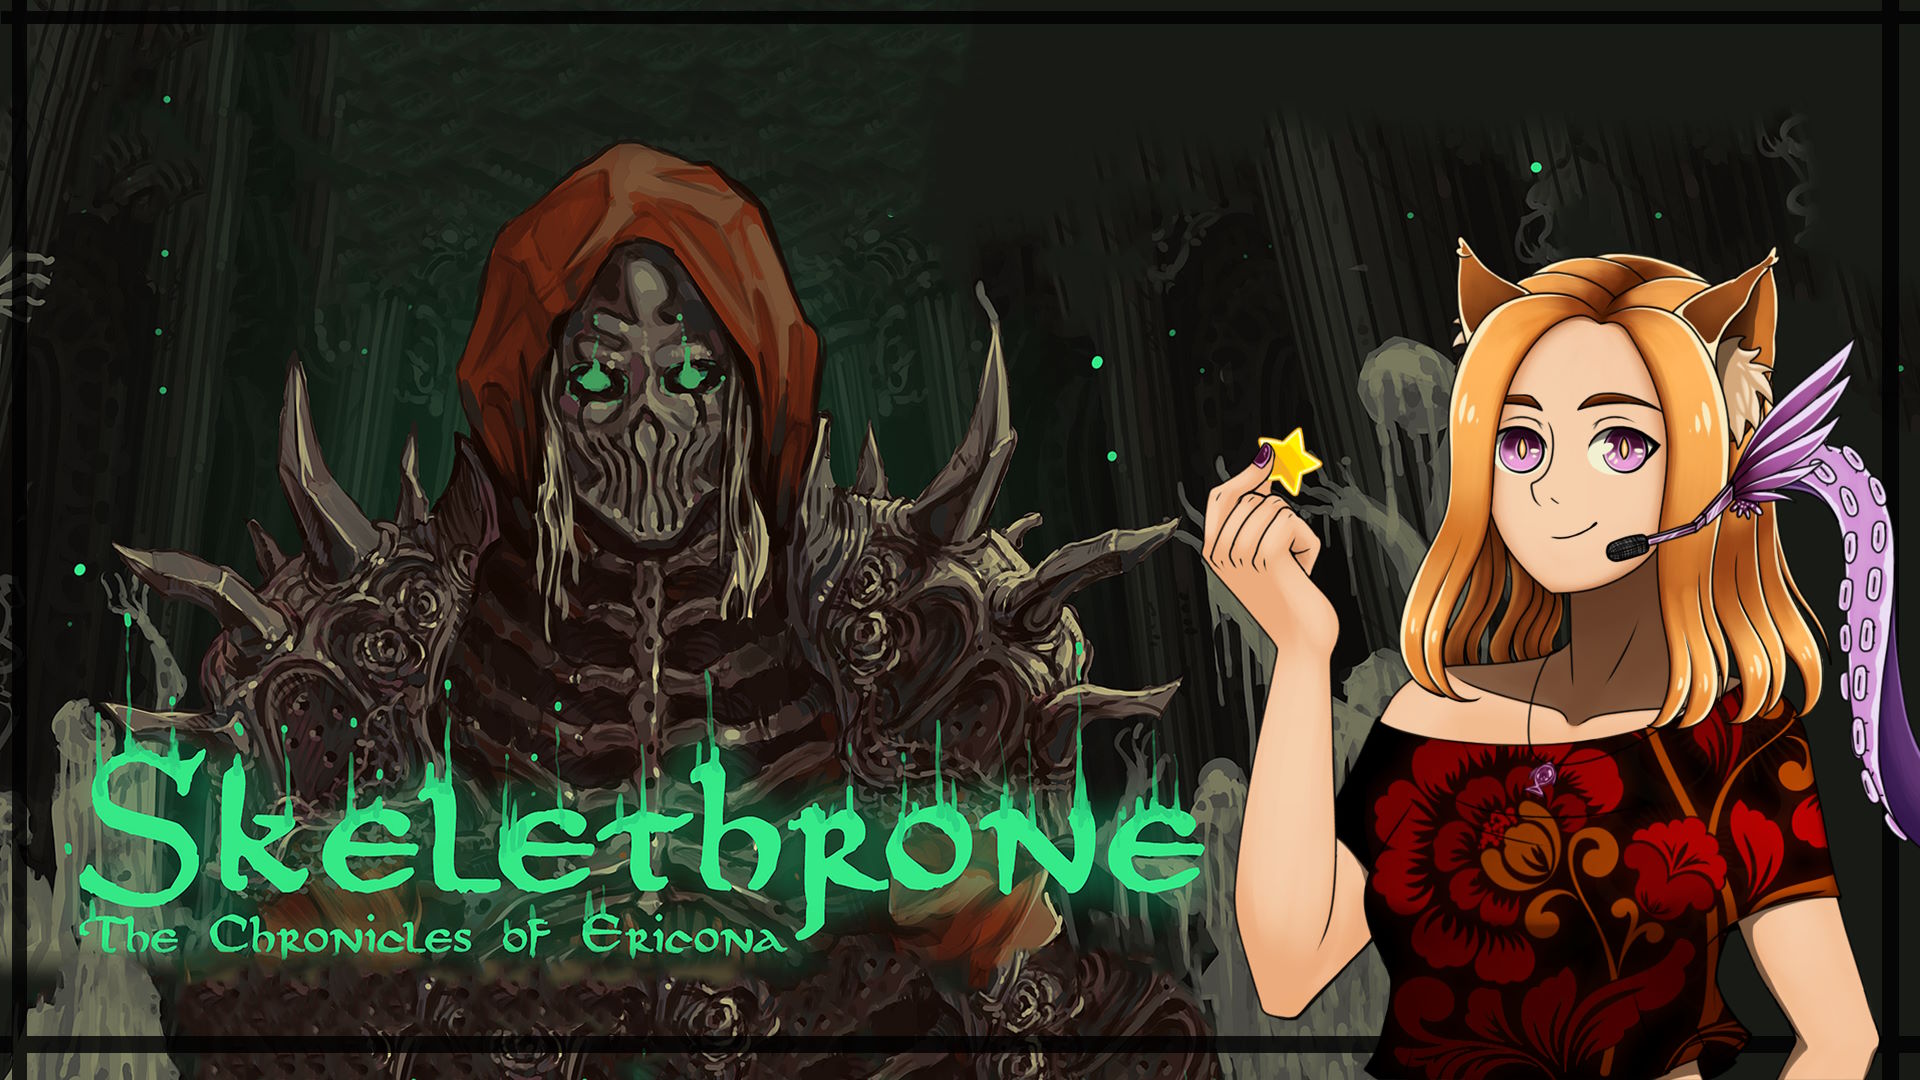 ☠️Восстал скелетом и умер им же☠️ || Skelethrone The Chronicles of Ericona (DEMO)